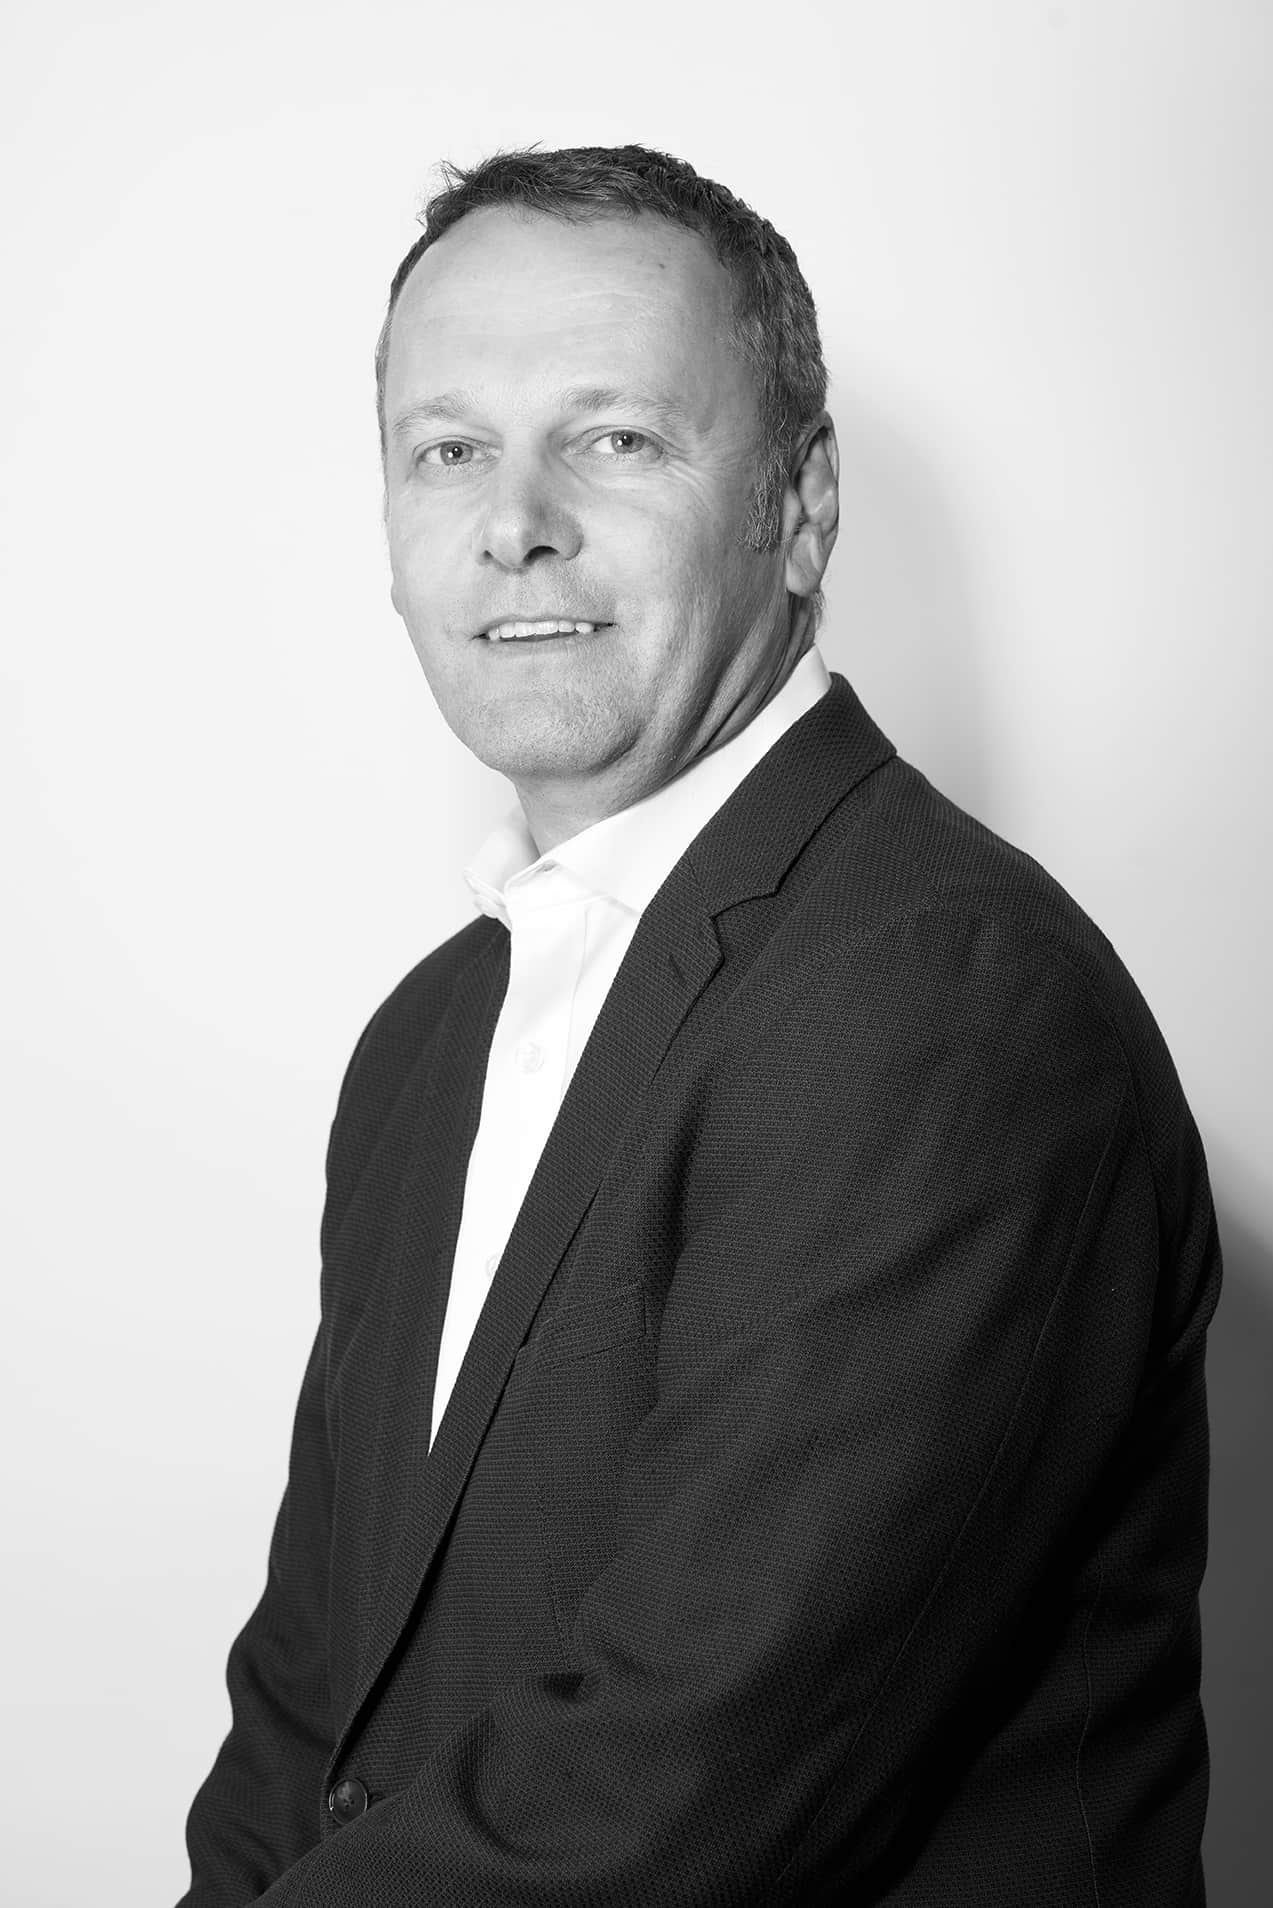 Picture of Jurgen Bosse, CEO of Tweezerman